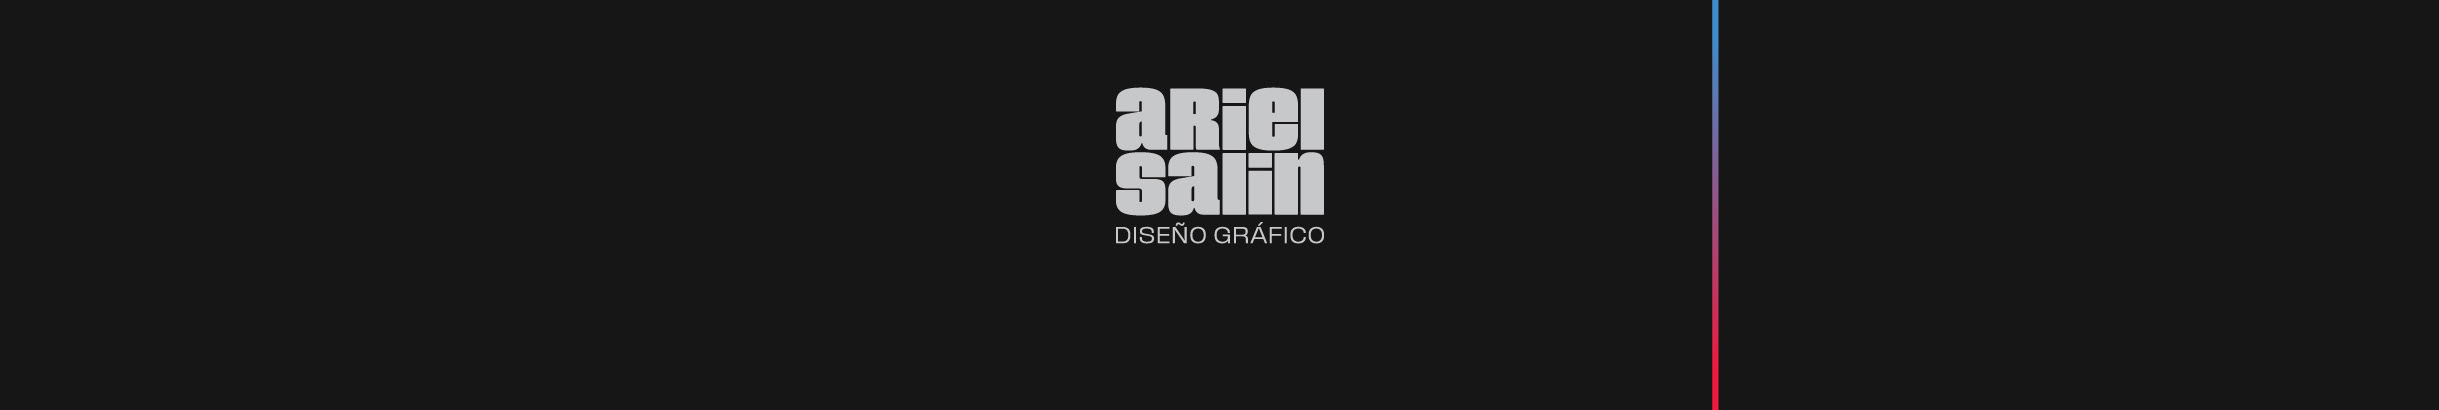 Ariel Salin profil başlığı